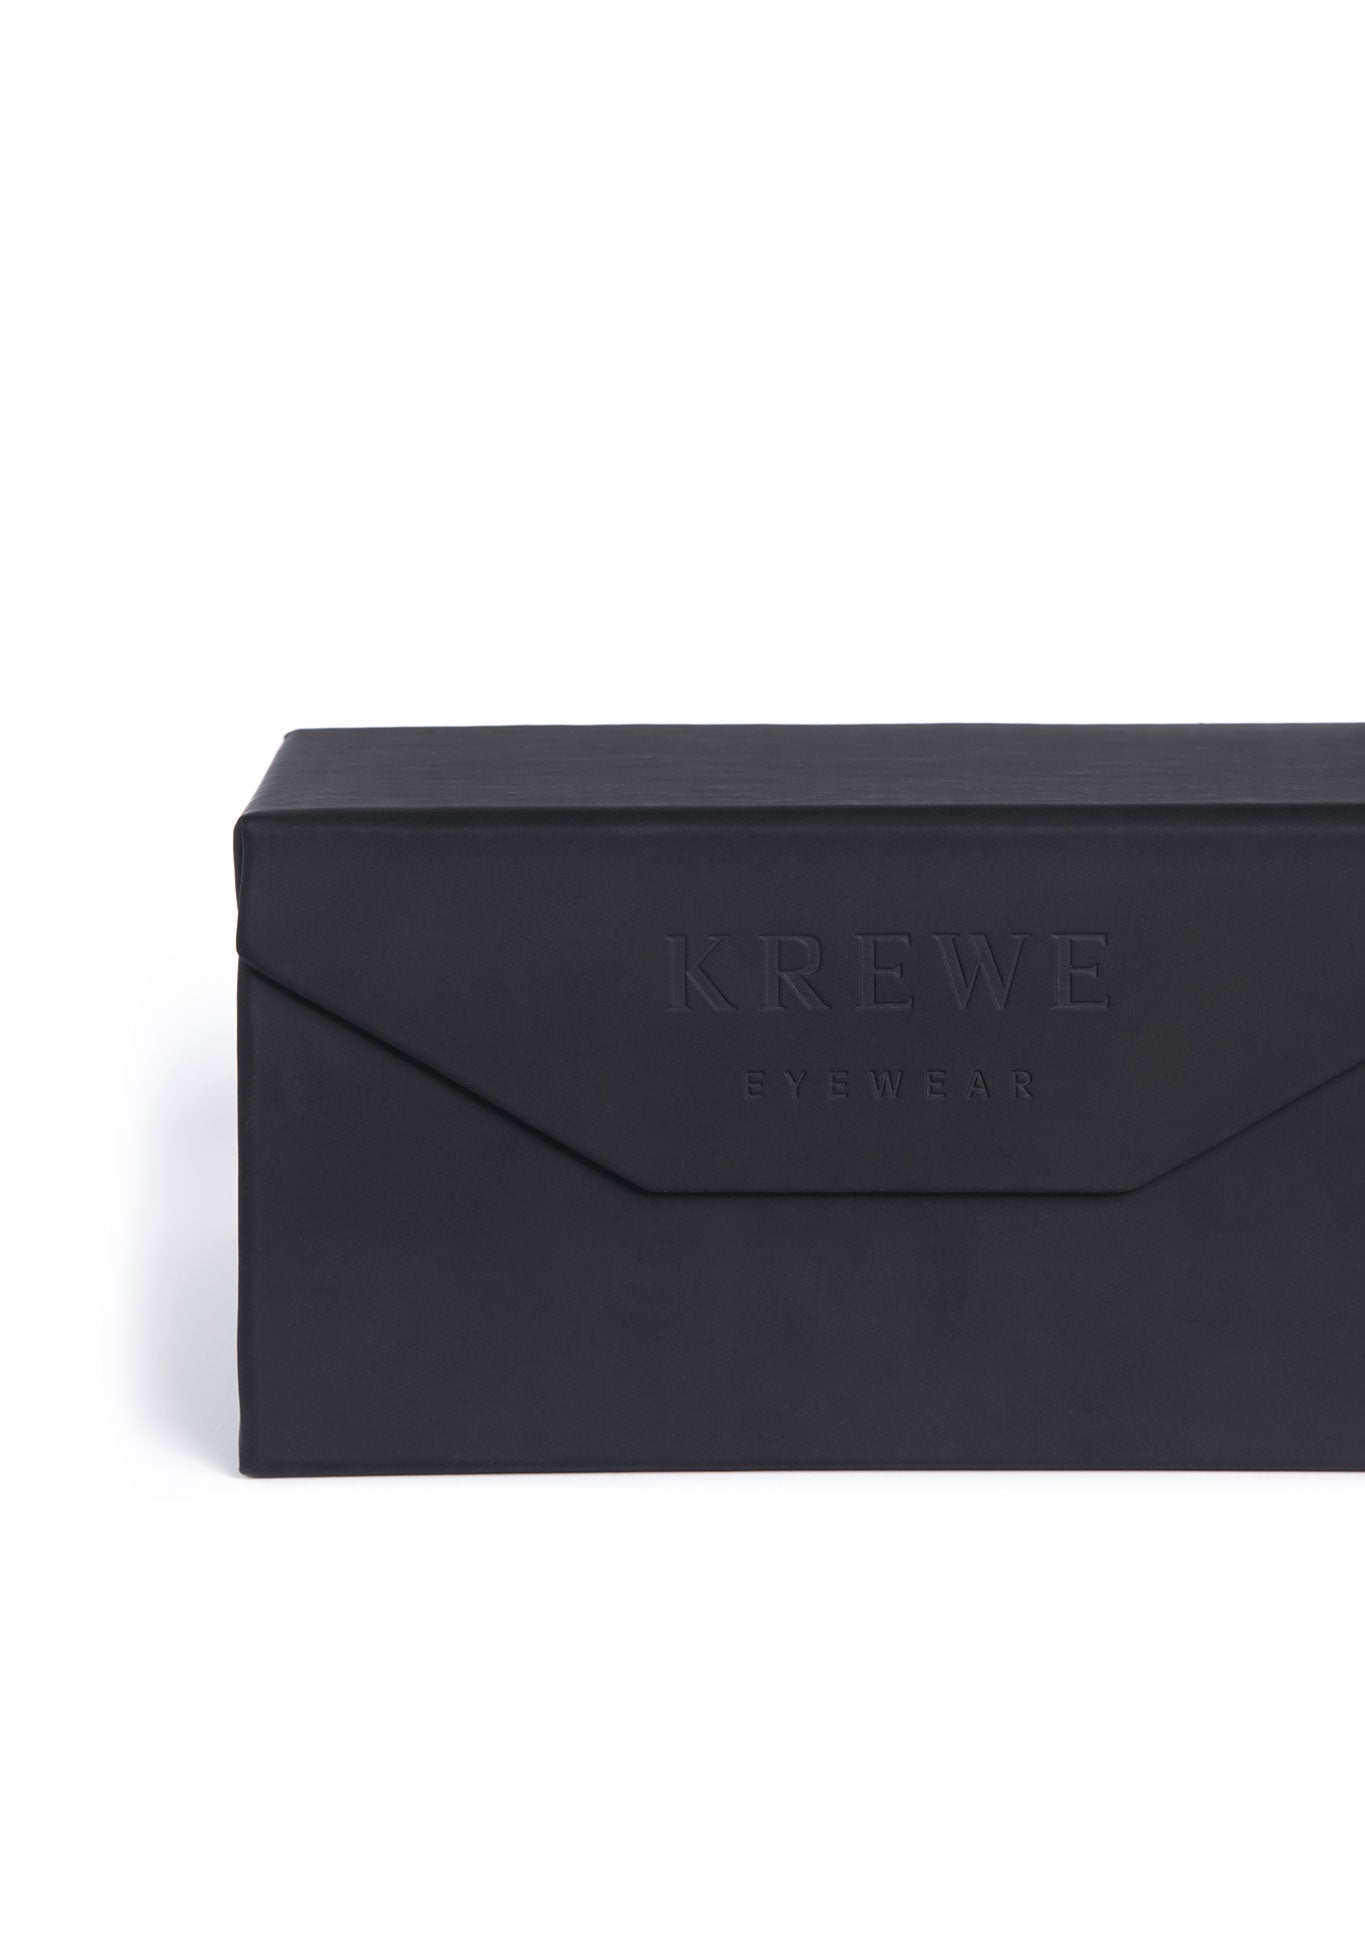 krewe custom 4 frame travel case, vegan leather womens model